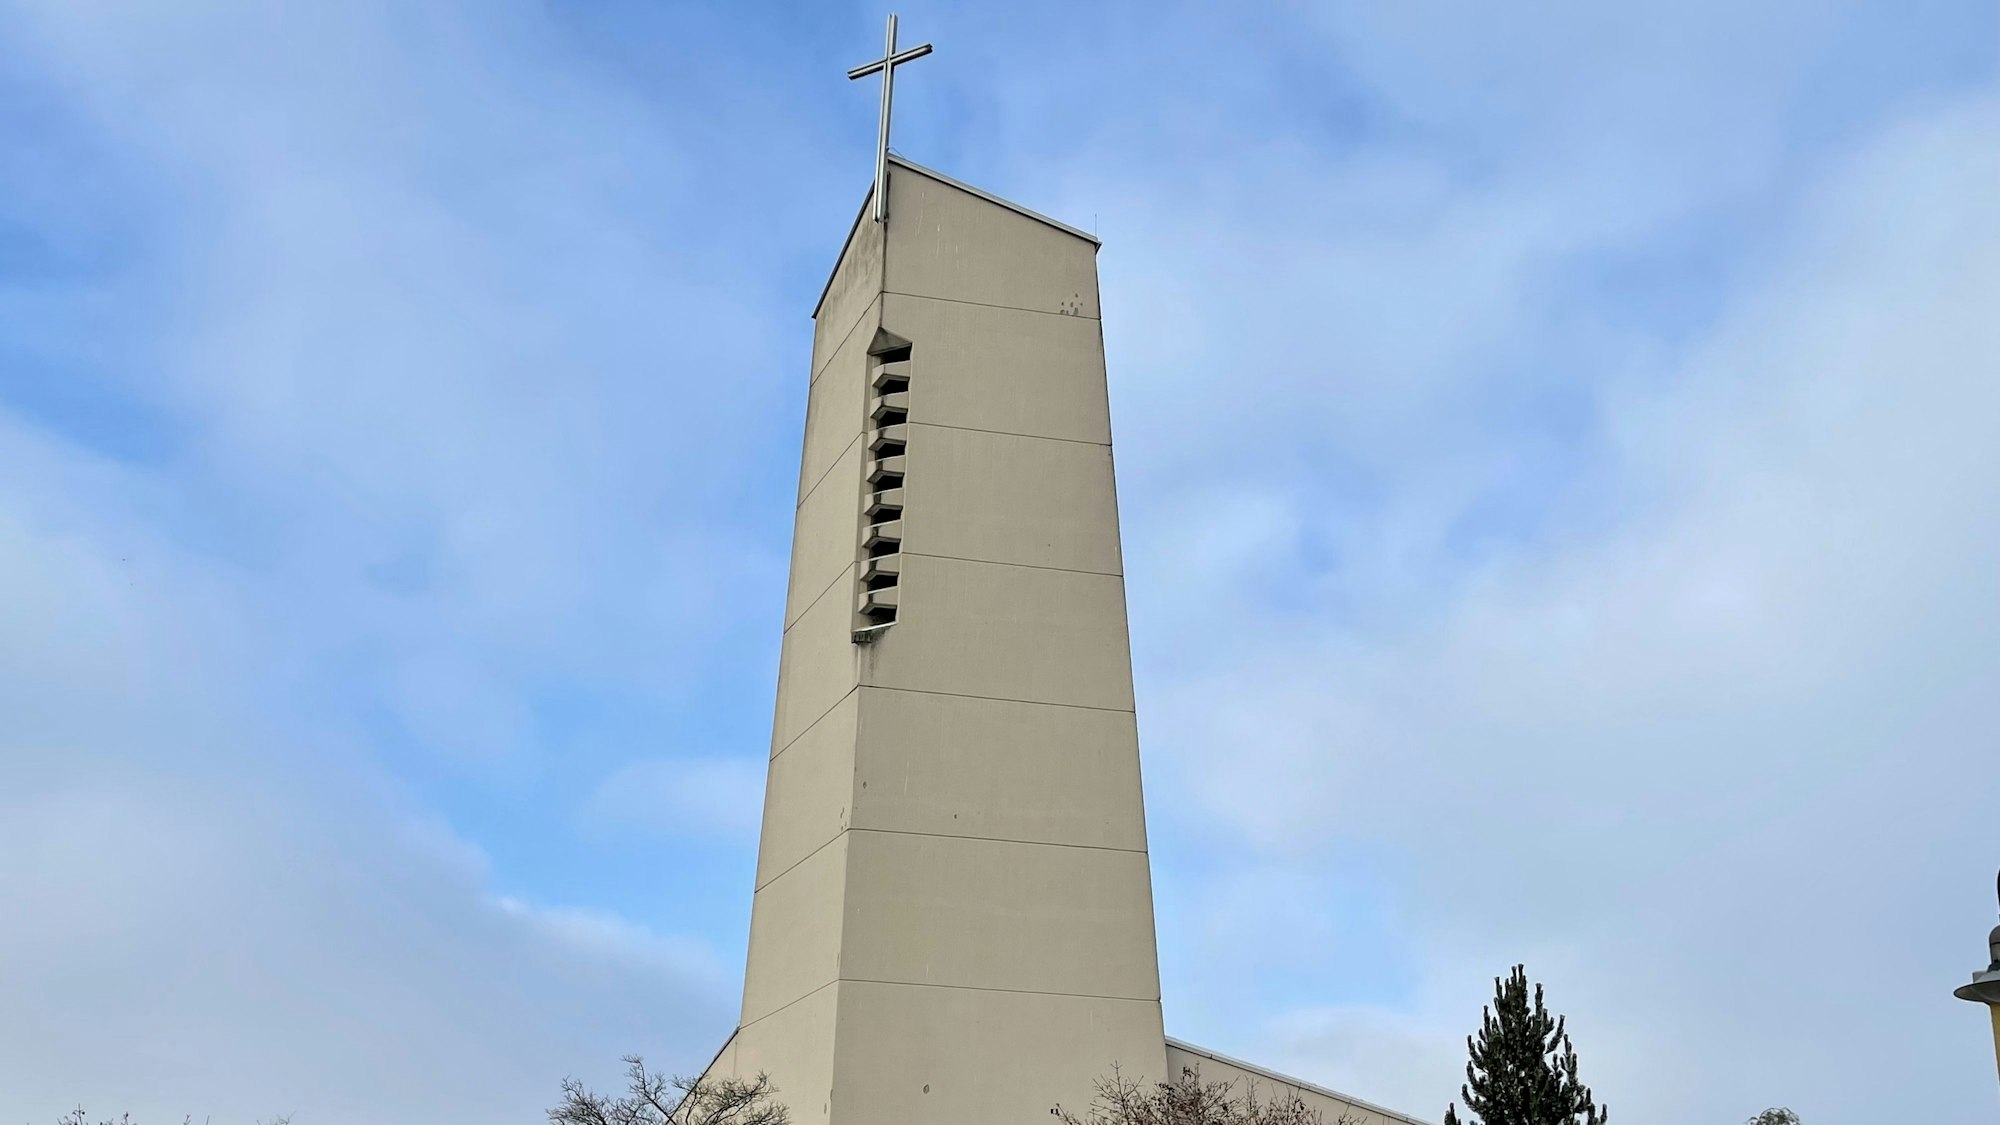 Der Kirchturm der Pfarrgemeinde St. Anna in Sankt Augustin vor blauem Himmel mit weißen Wolken